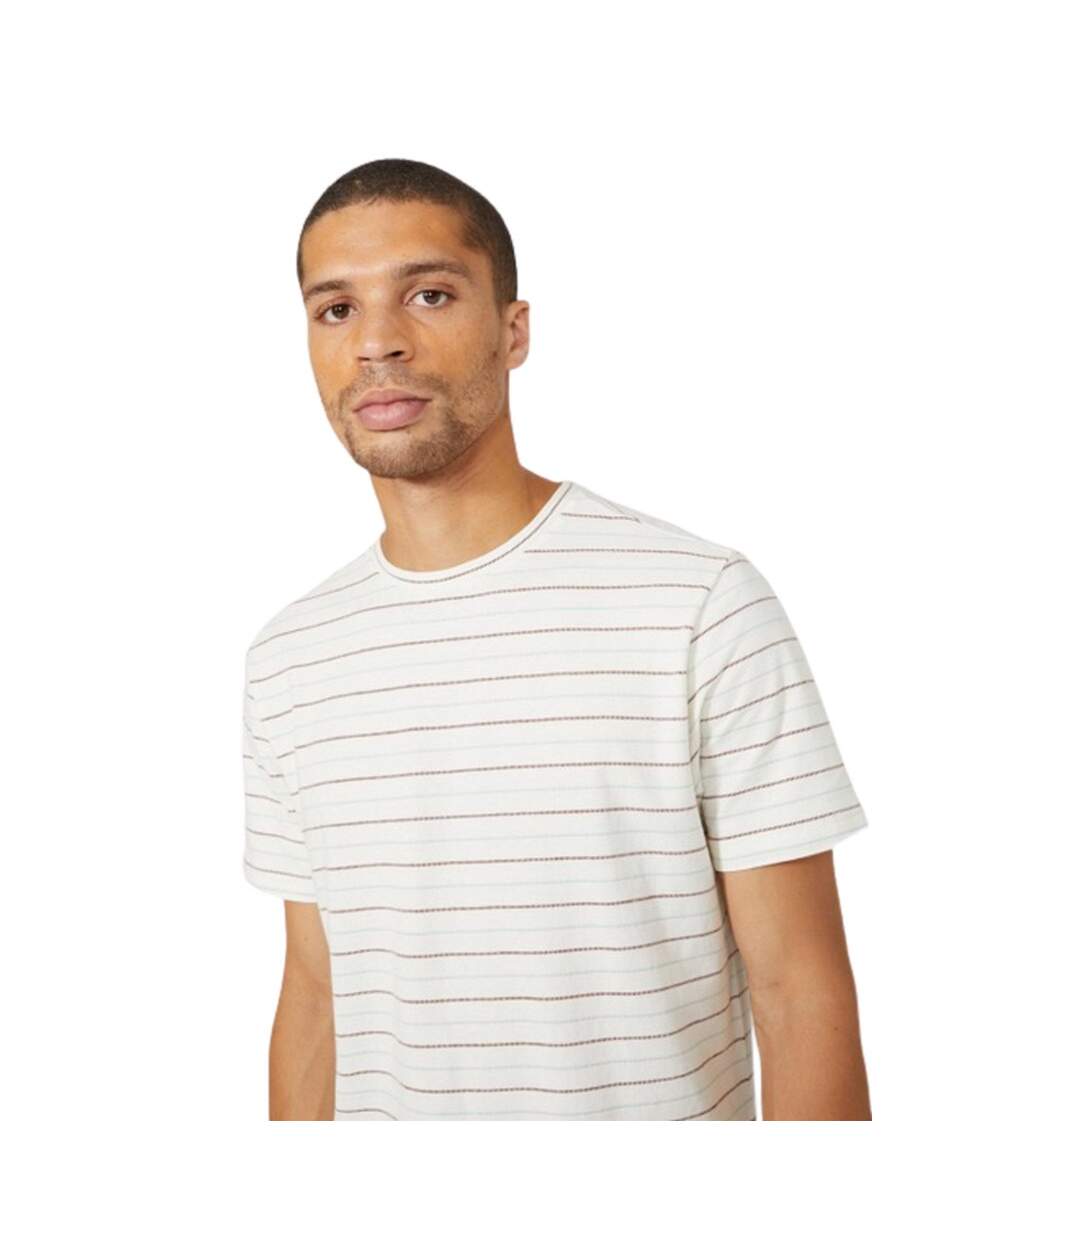 Maine - T-shirt DASH - Homme (Blanc) - UTDH169